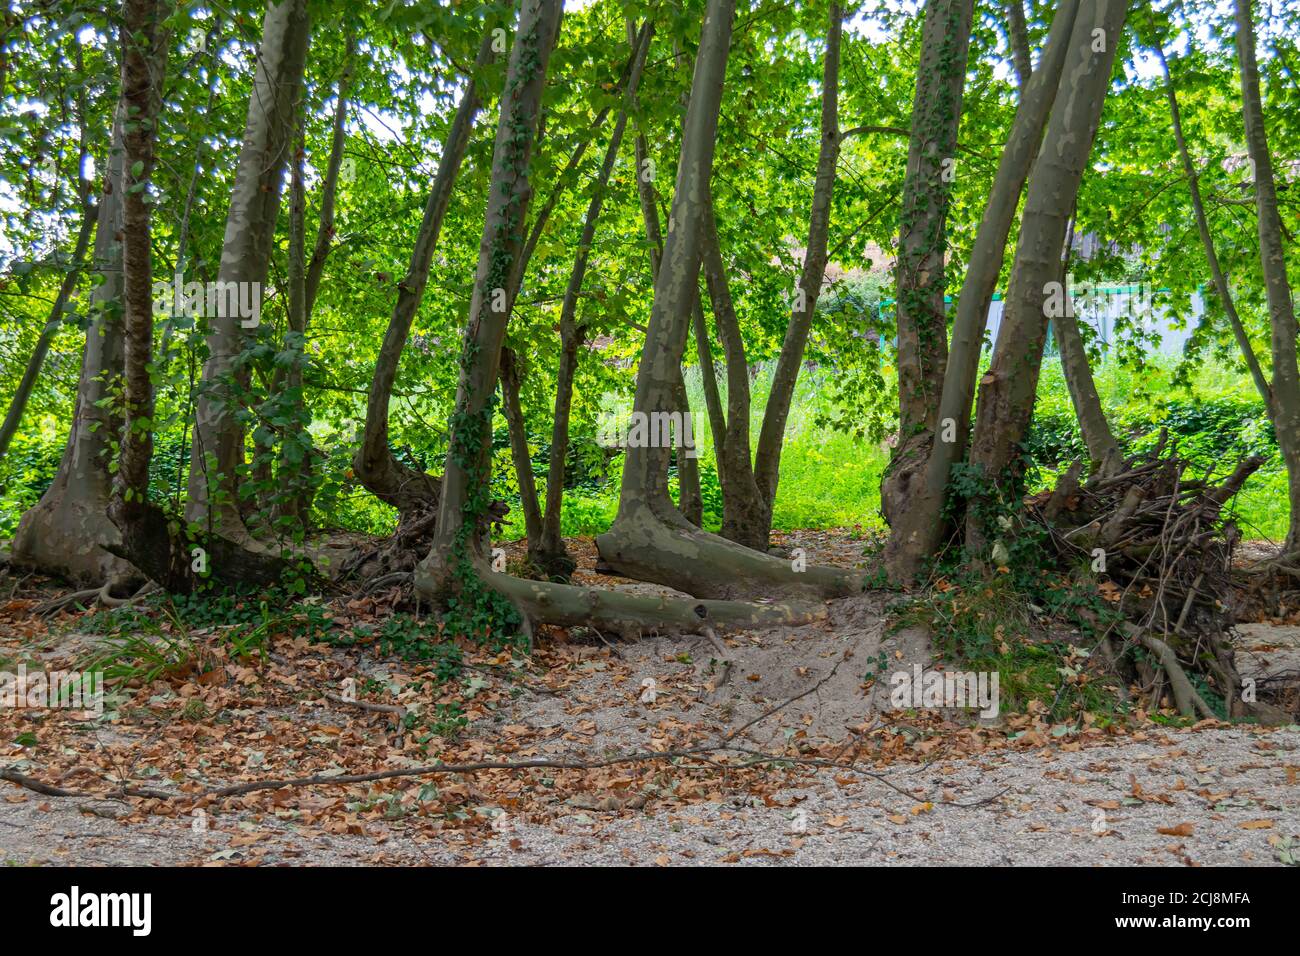 Margen río Acer Platanus árboles bendados y formados por el río fuerzas Foto de stock